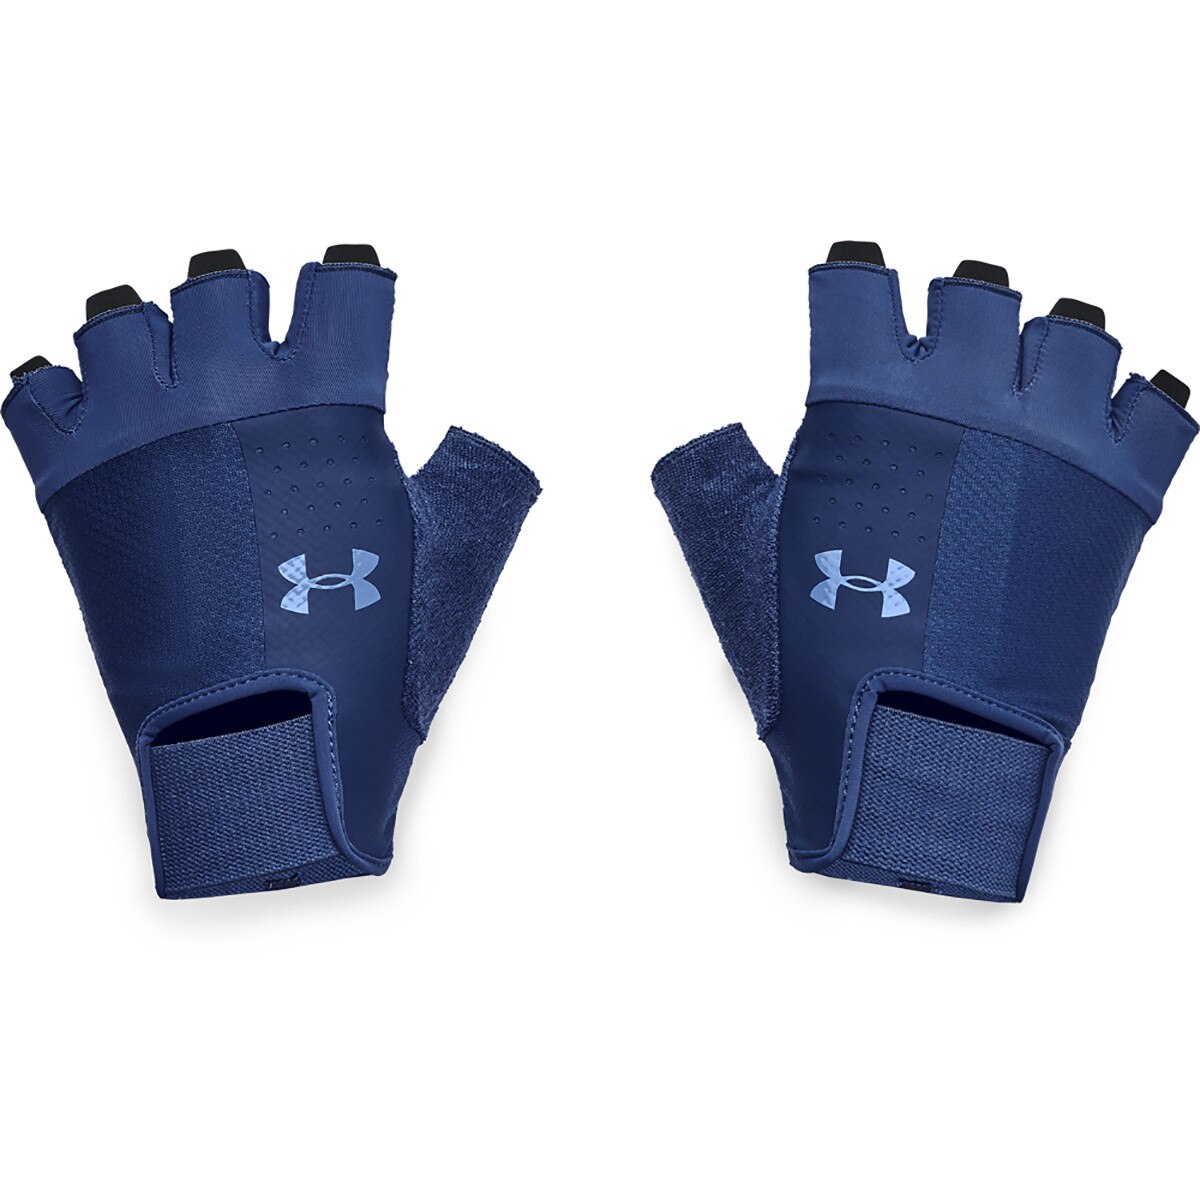 UNDER ARMOUR Męskie rękawiczki treningowe UNDER ARMOUR Men's Training Glove Granat